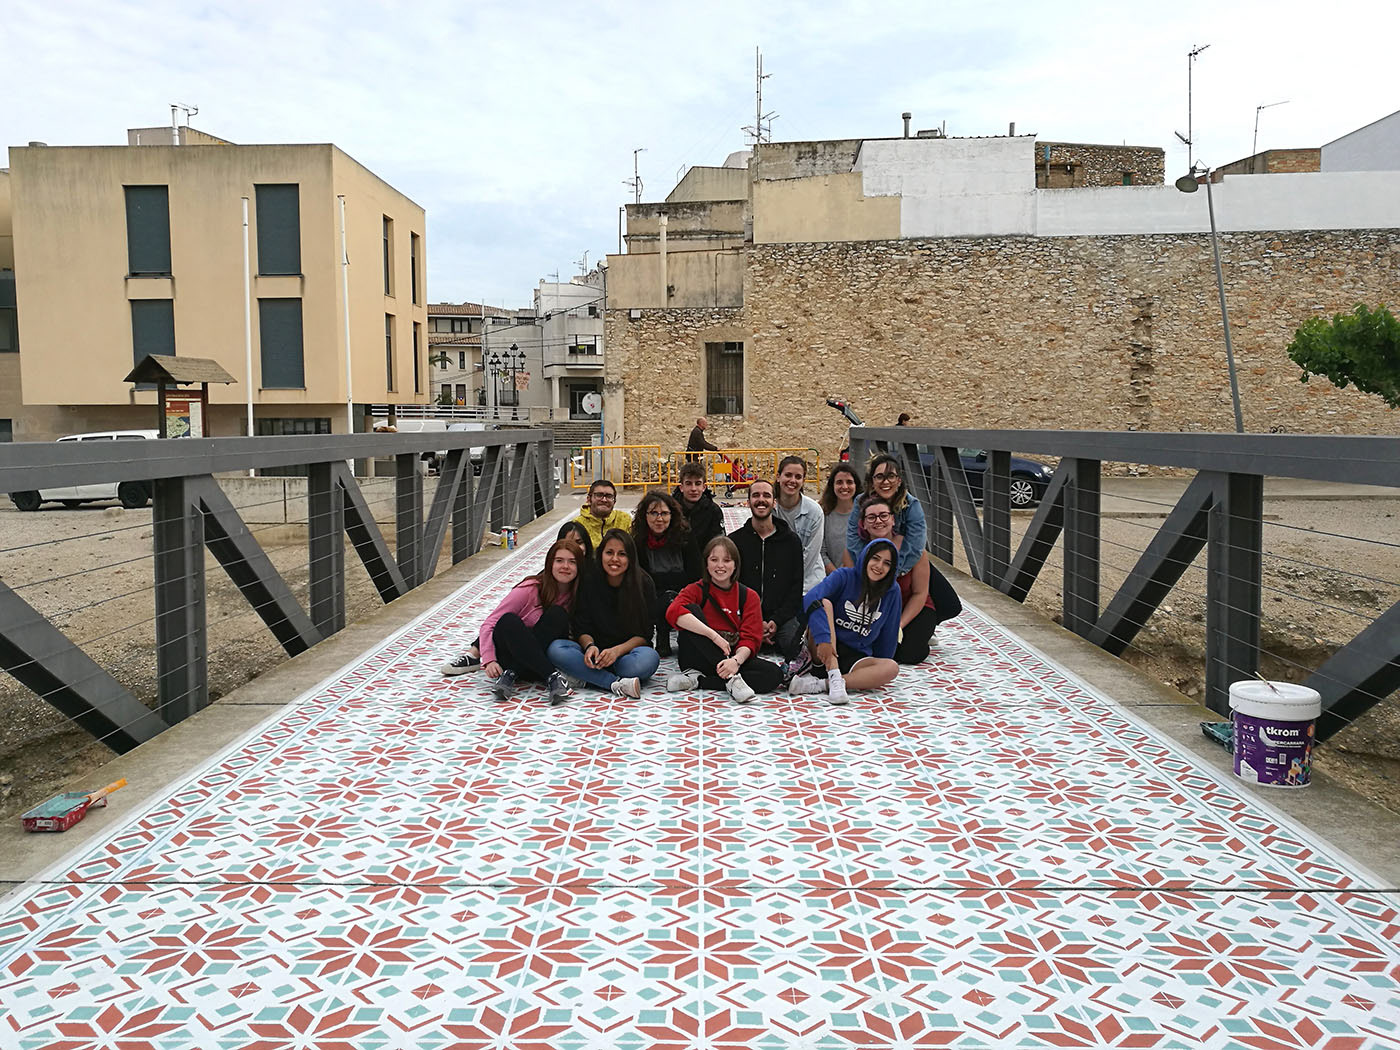 FLOOR tiles tile pattern pattern hidraulic floors project javier de riba Workshop public